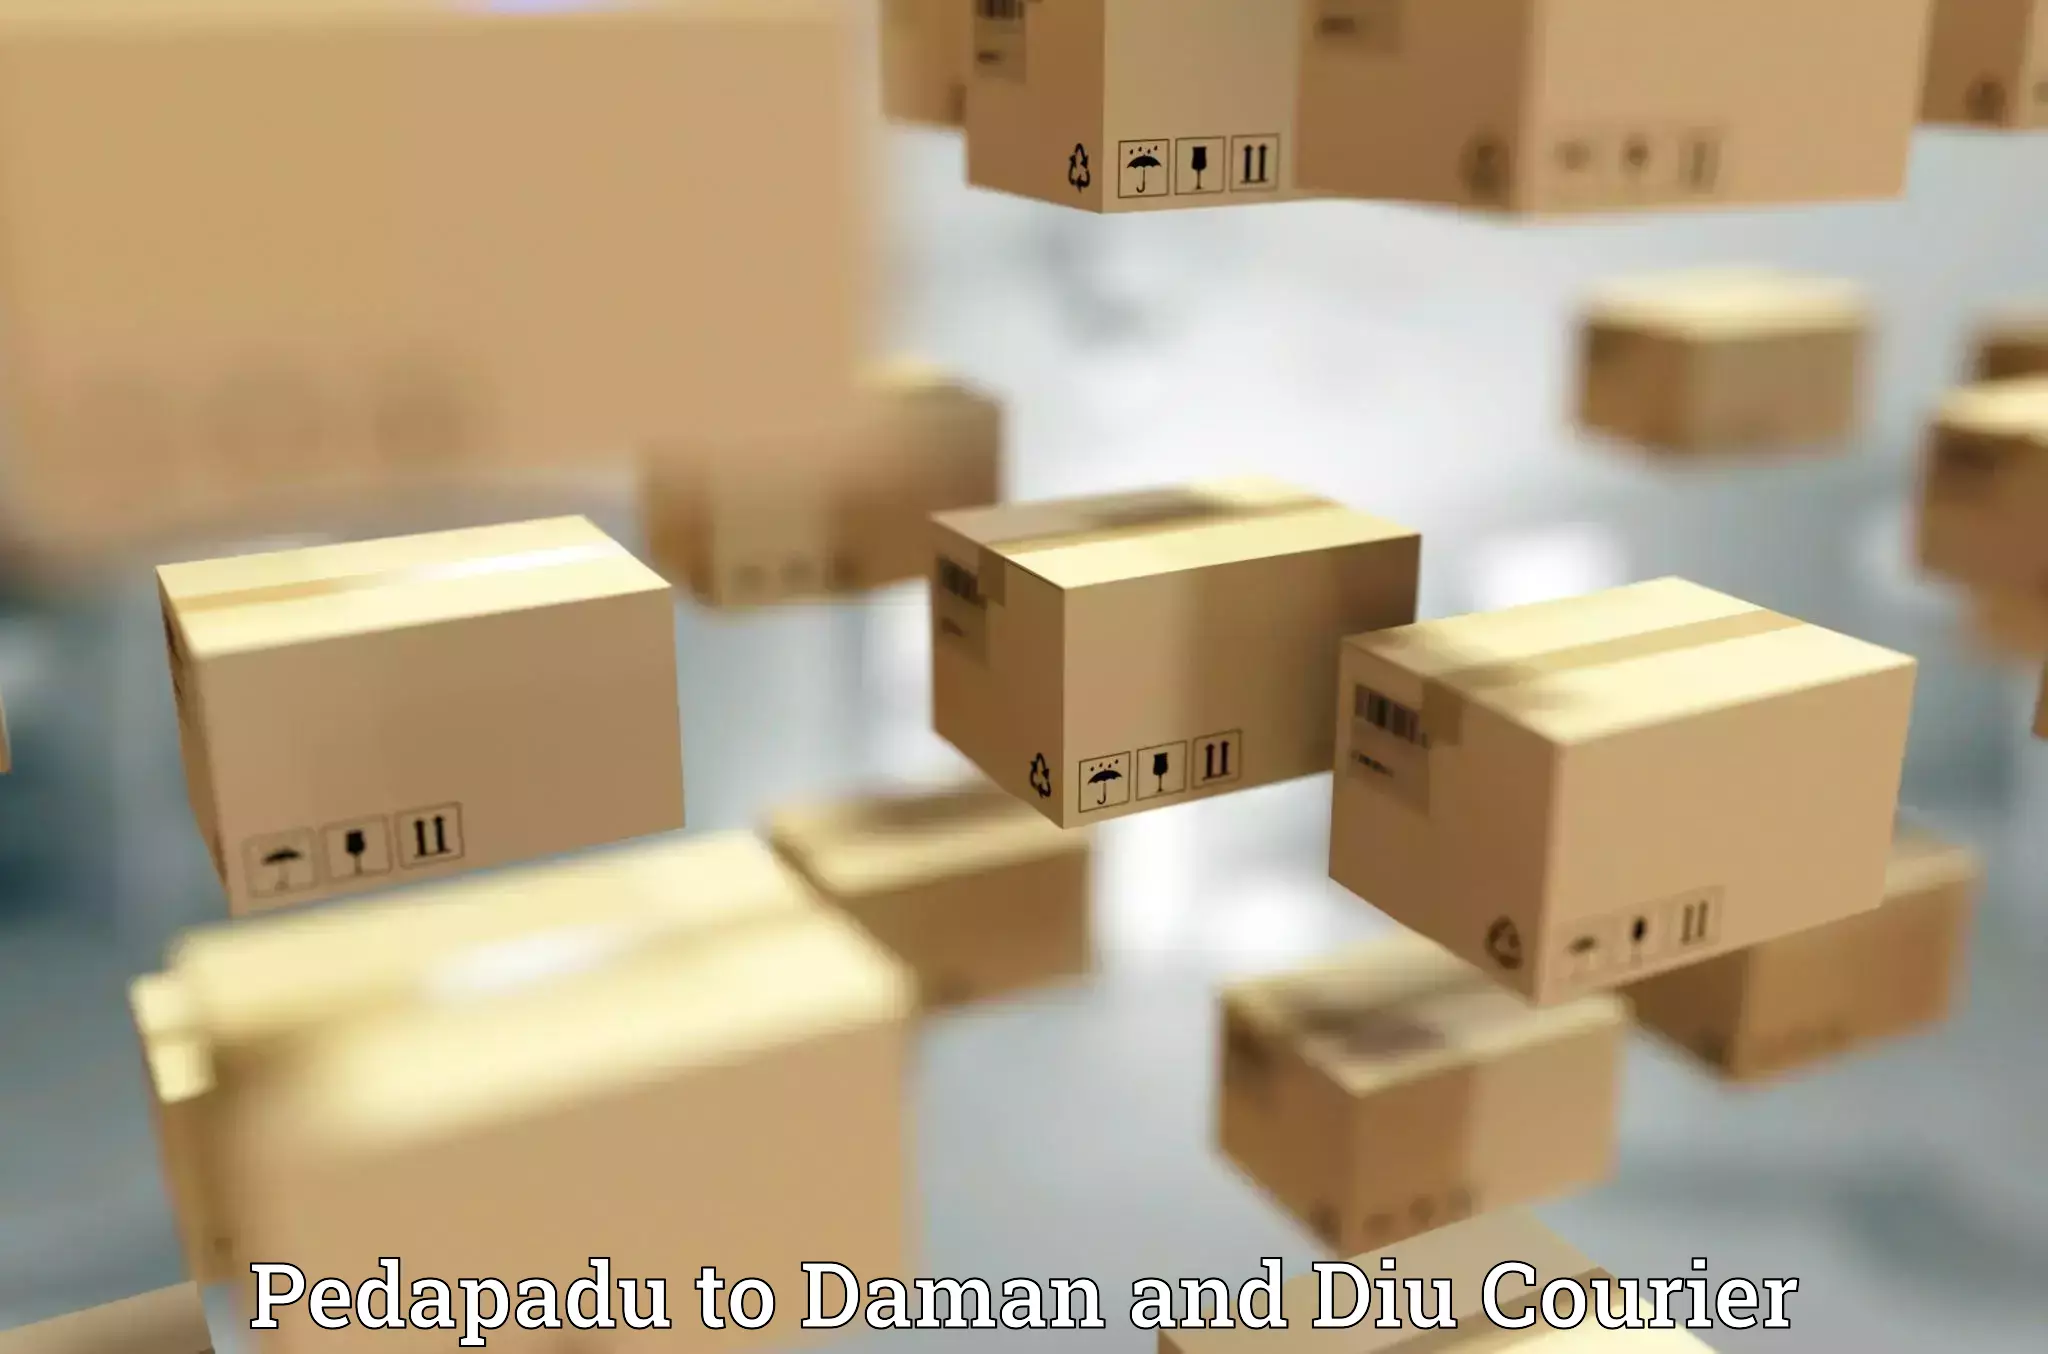 24-hour courier service Pedapadu to Daman and Diu